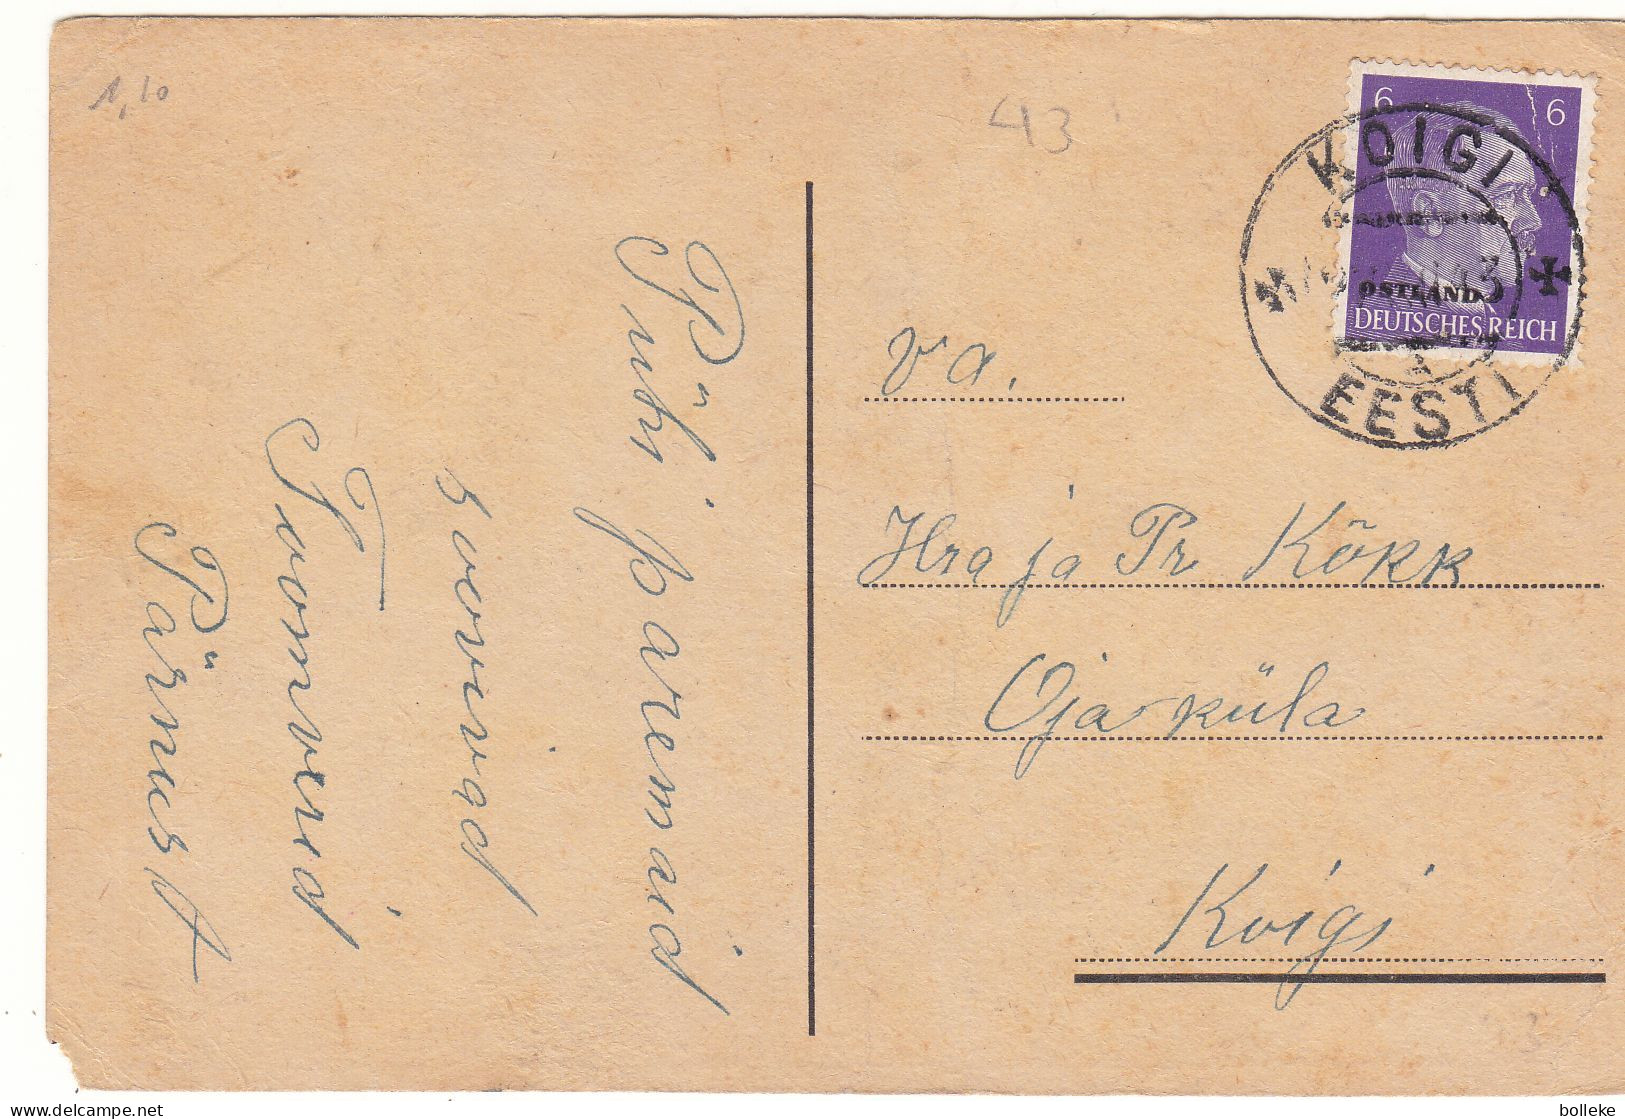 Allemagne - Ostland - Carte Postale De 1943 - Oblit Koigi - Exp Vers Koigi - Hitler - - Besetzungen 1938-45